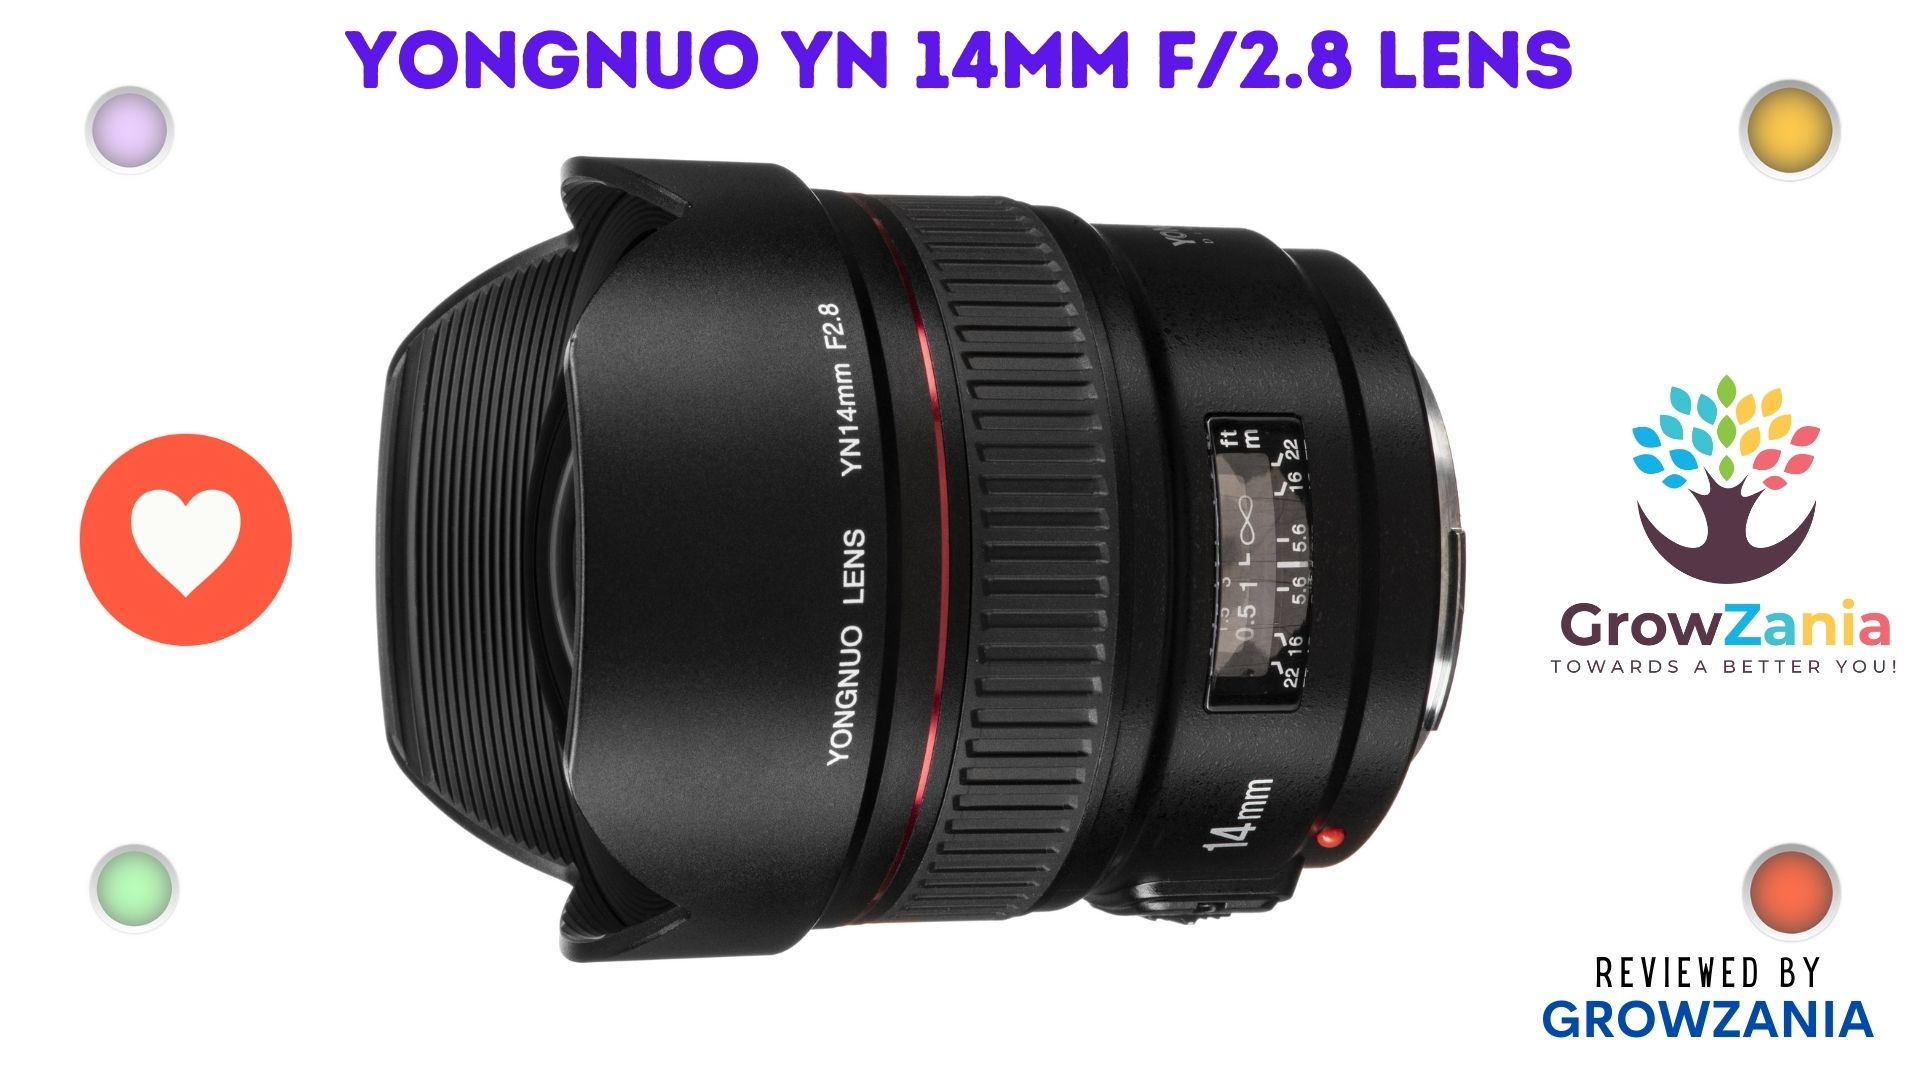 Yongnuo YN 14mm f/2.8 Lens